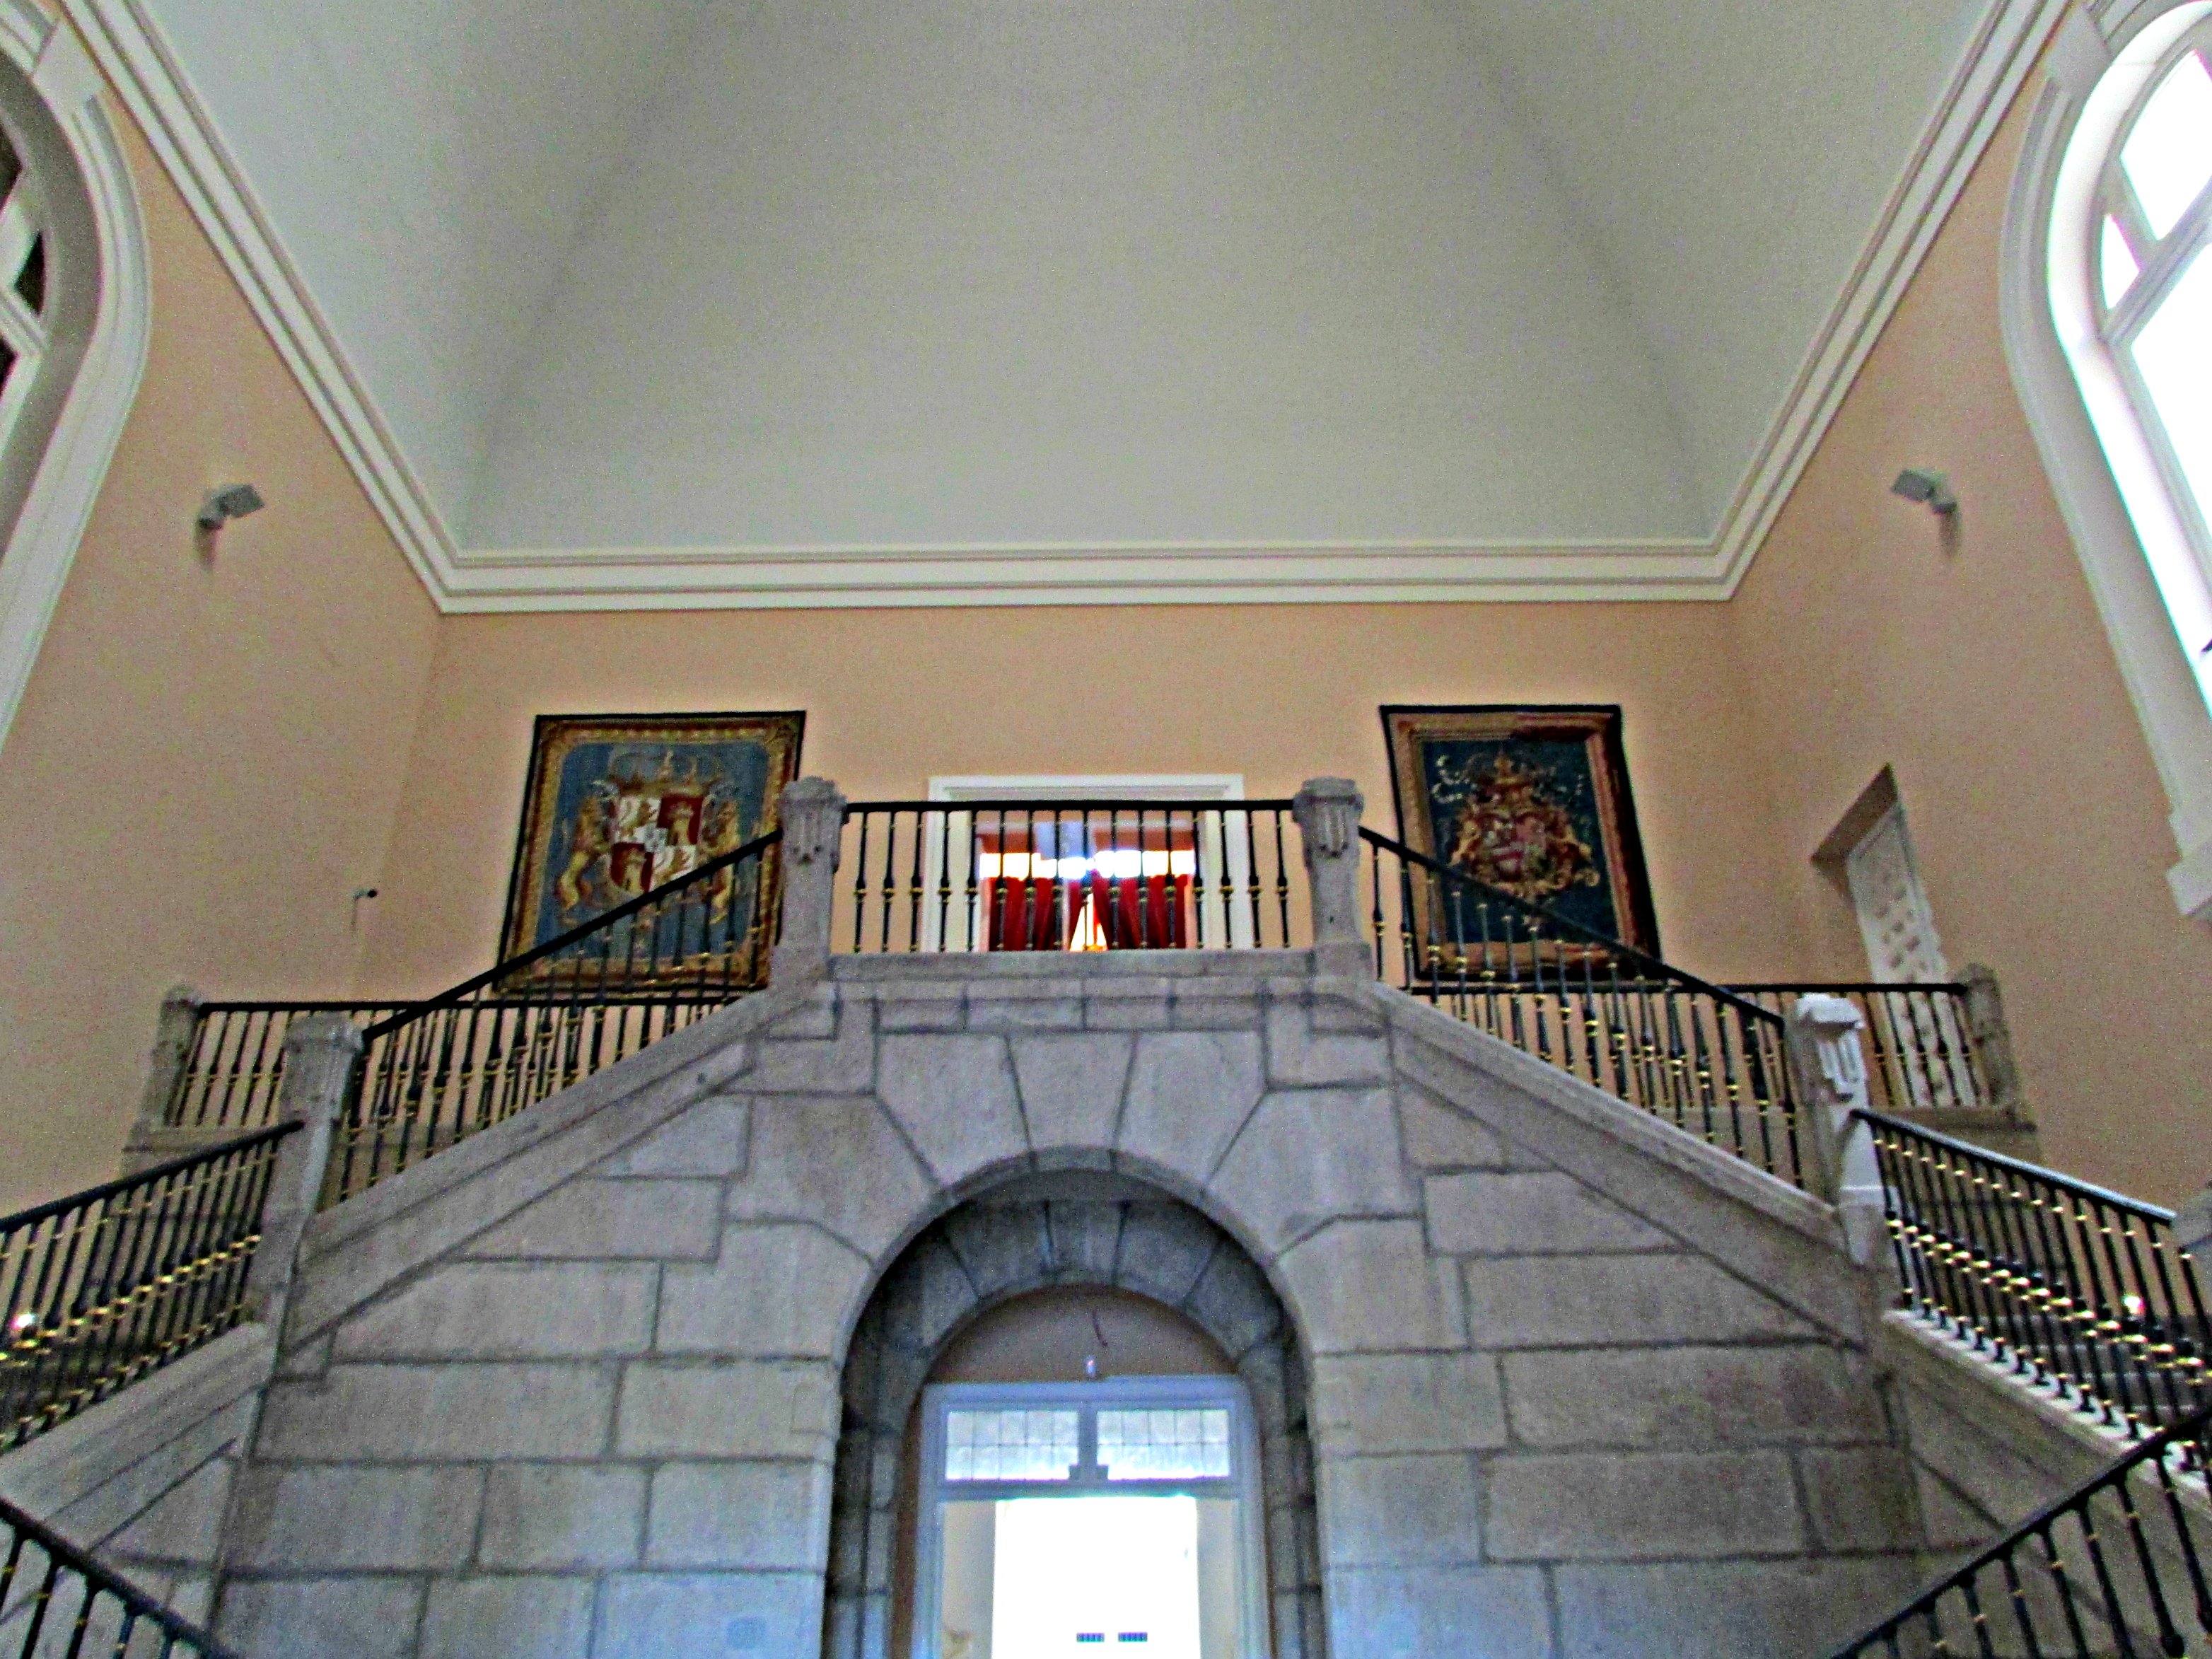 The main staircase Royal Palace of La Granja